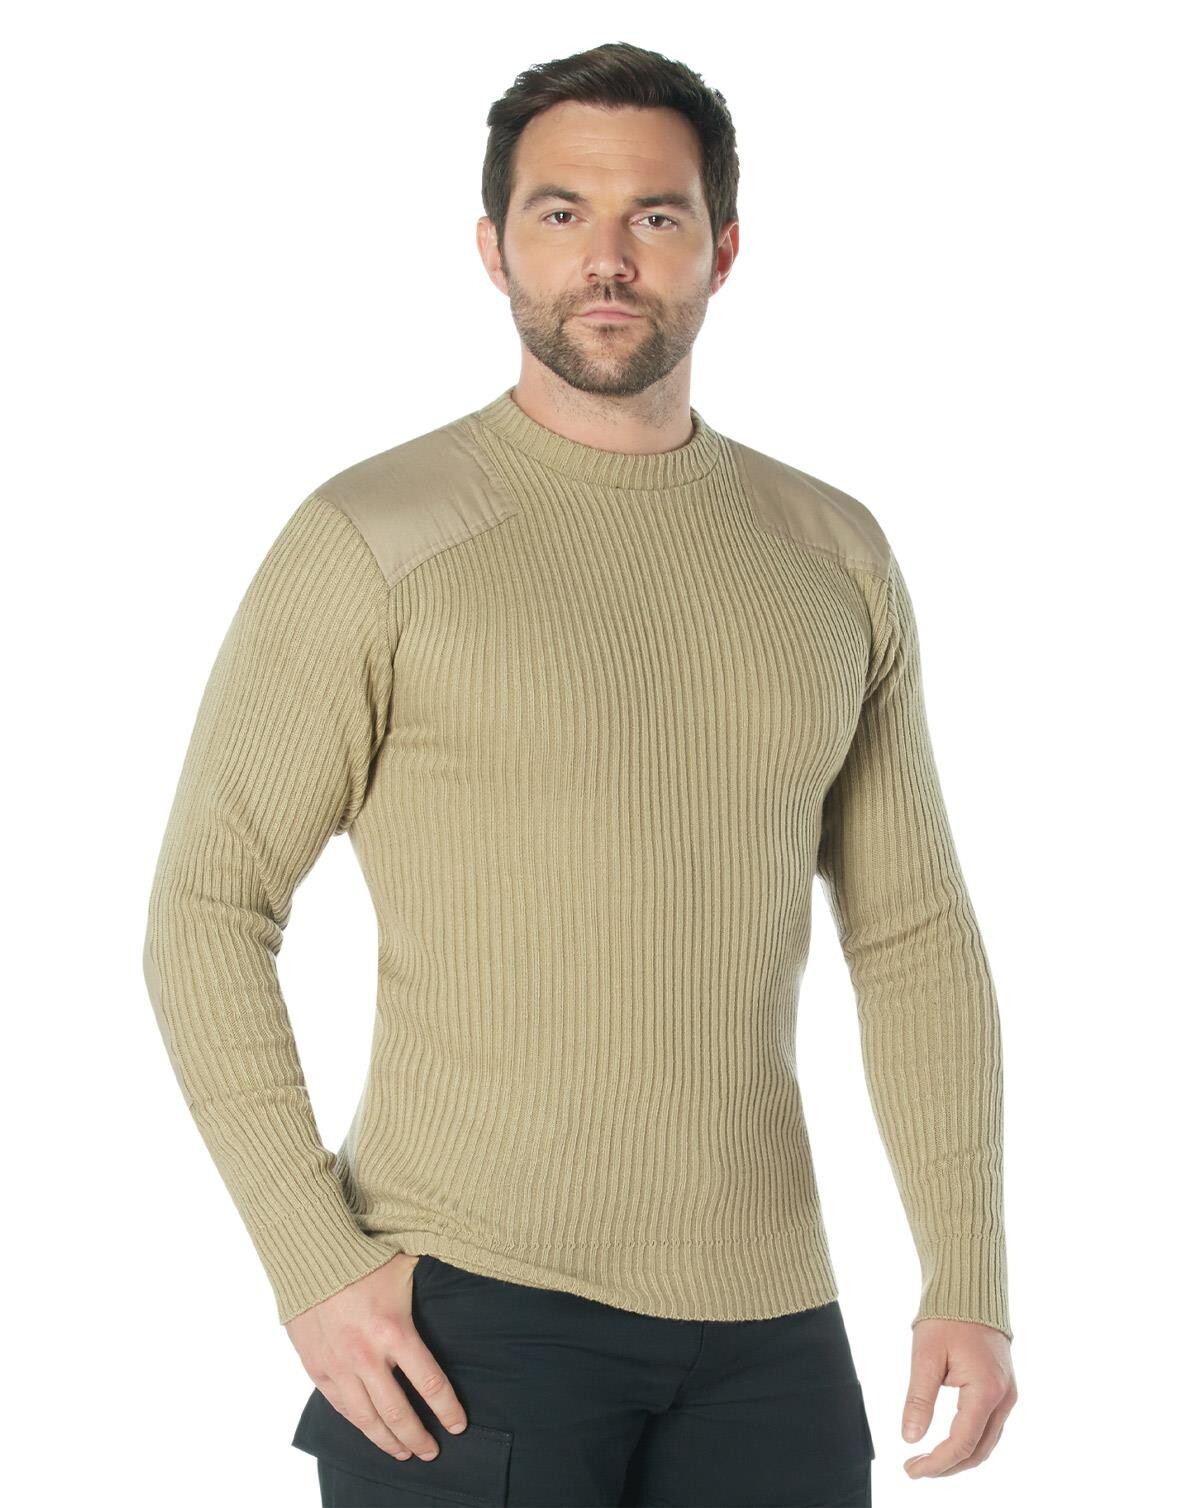 14: Rothco Commando Sweater - G.I. Style (Khaki, S)